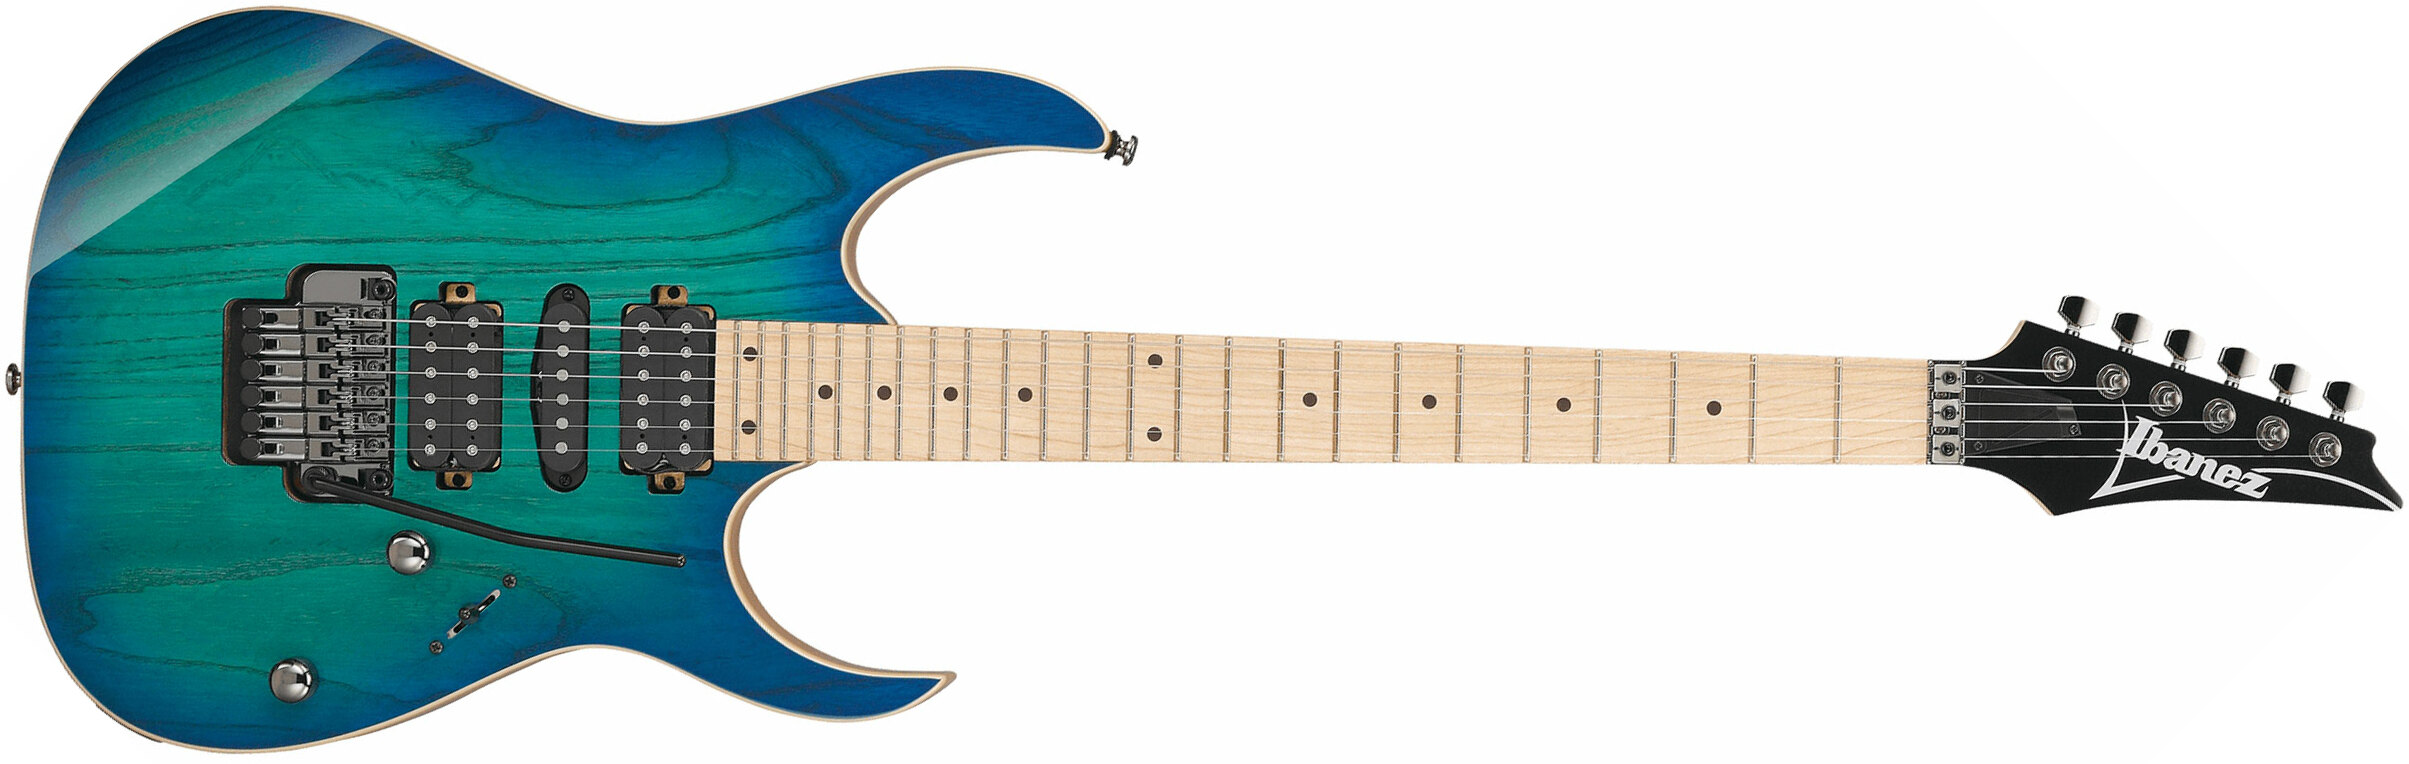 Ibanez Rg470ahm Bmt Standard Hsh Fr Mn - Blue Moon Burst - Elektrische gitaar in Str-vorm - Main picture